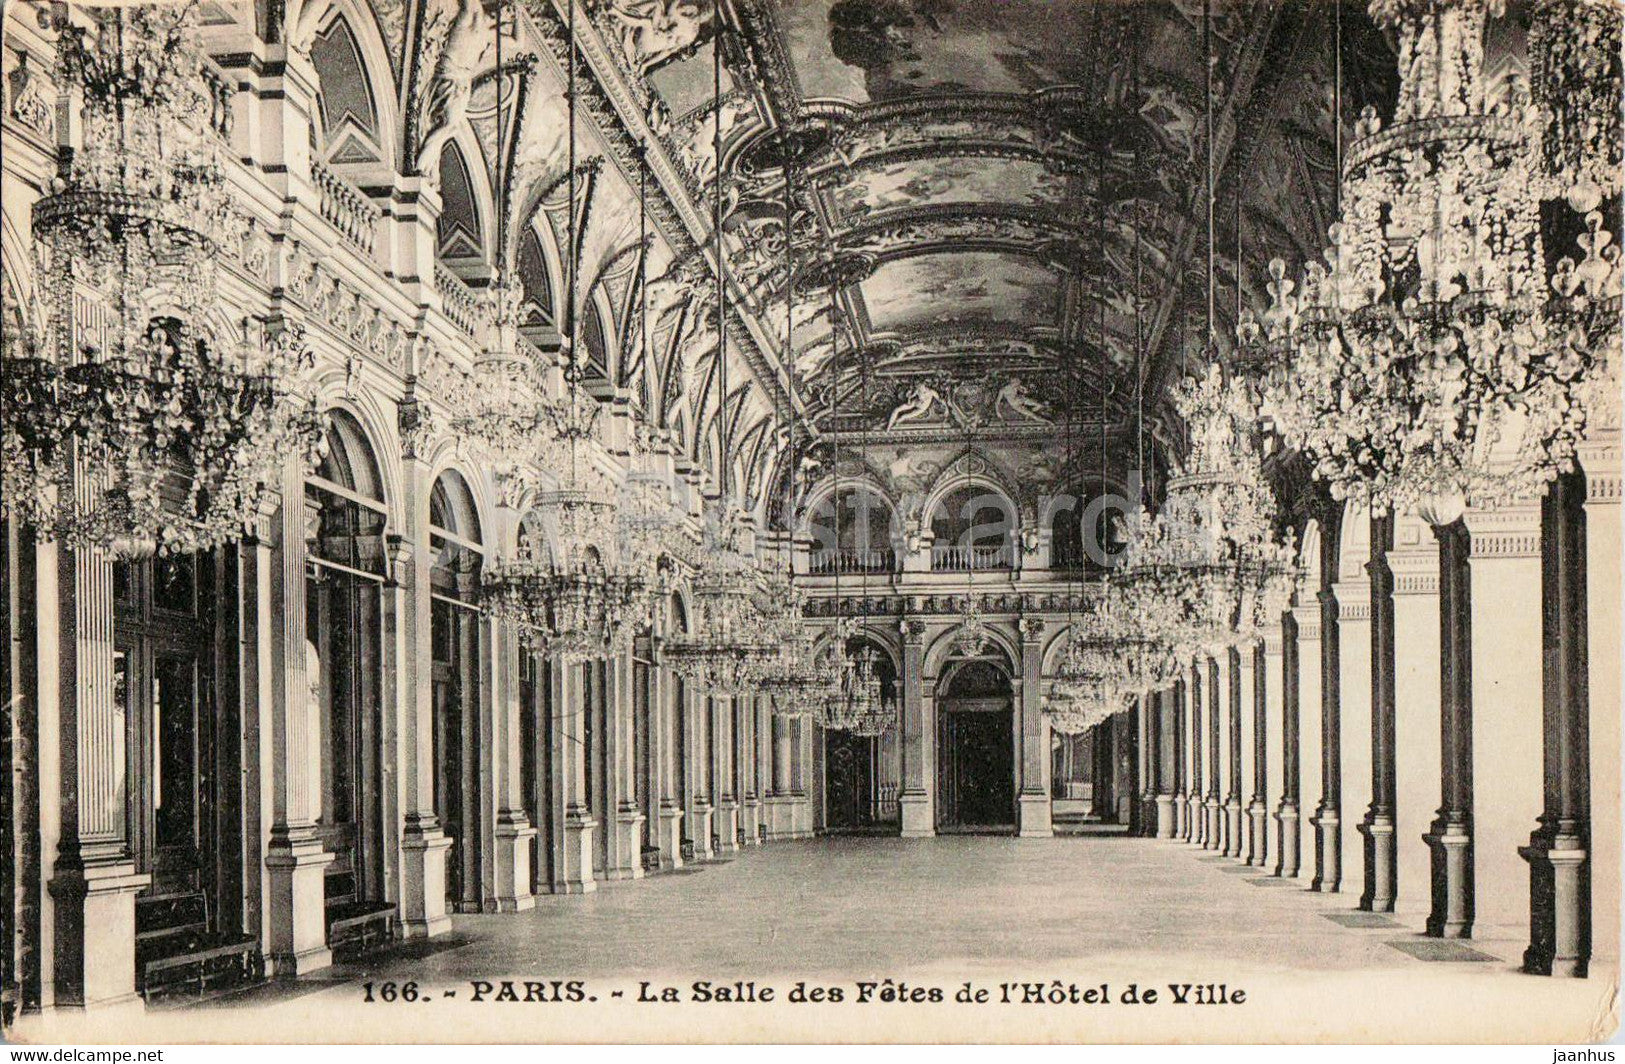 Paris - La Salle des Fetes de l'Hotel de Ville - 166 - old postcard - France - unused - JH Postcards